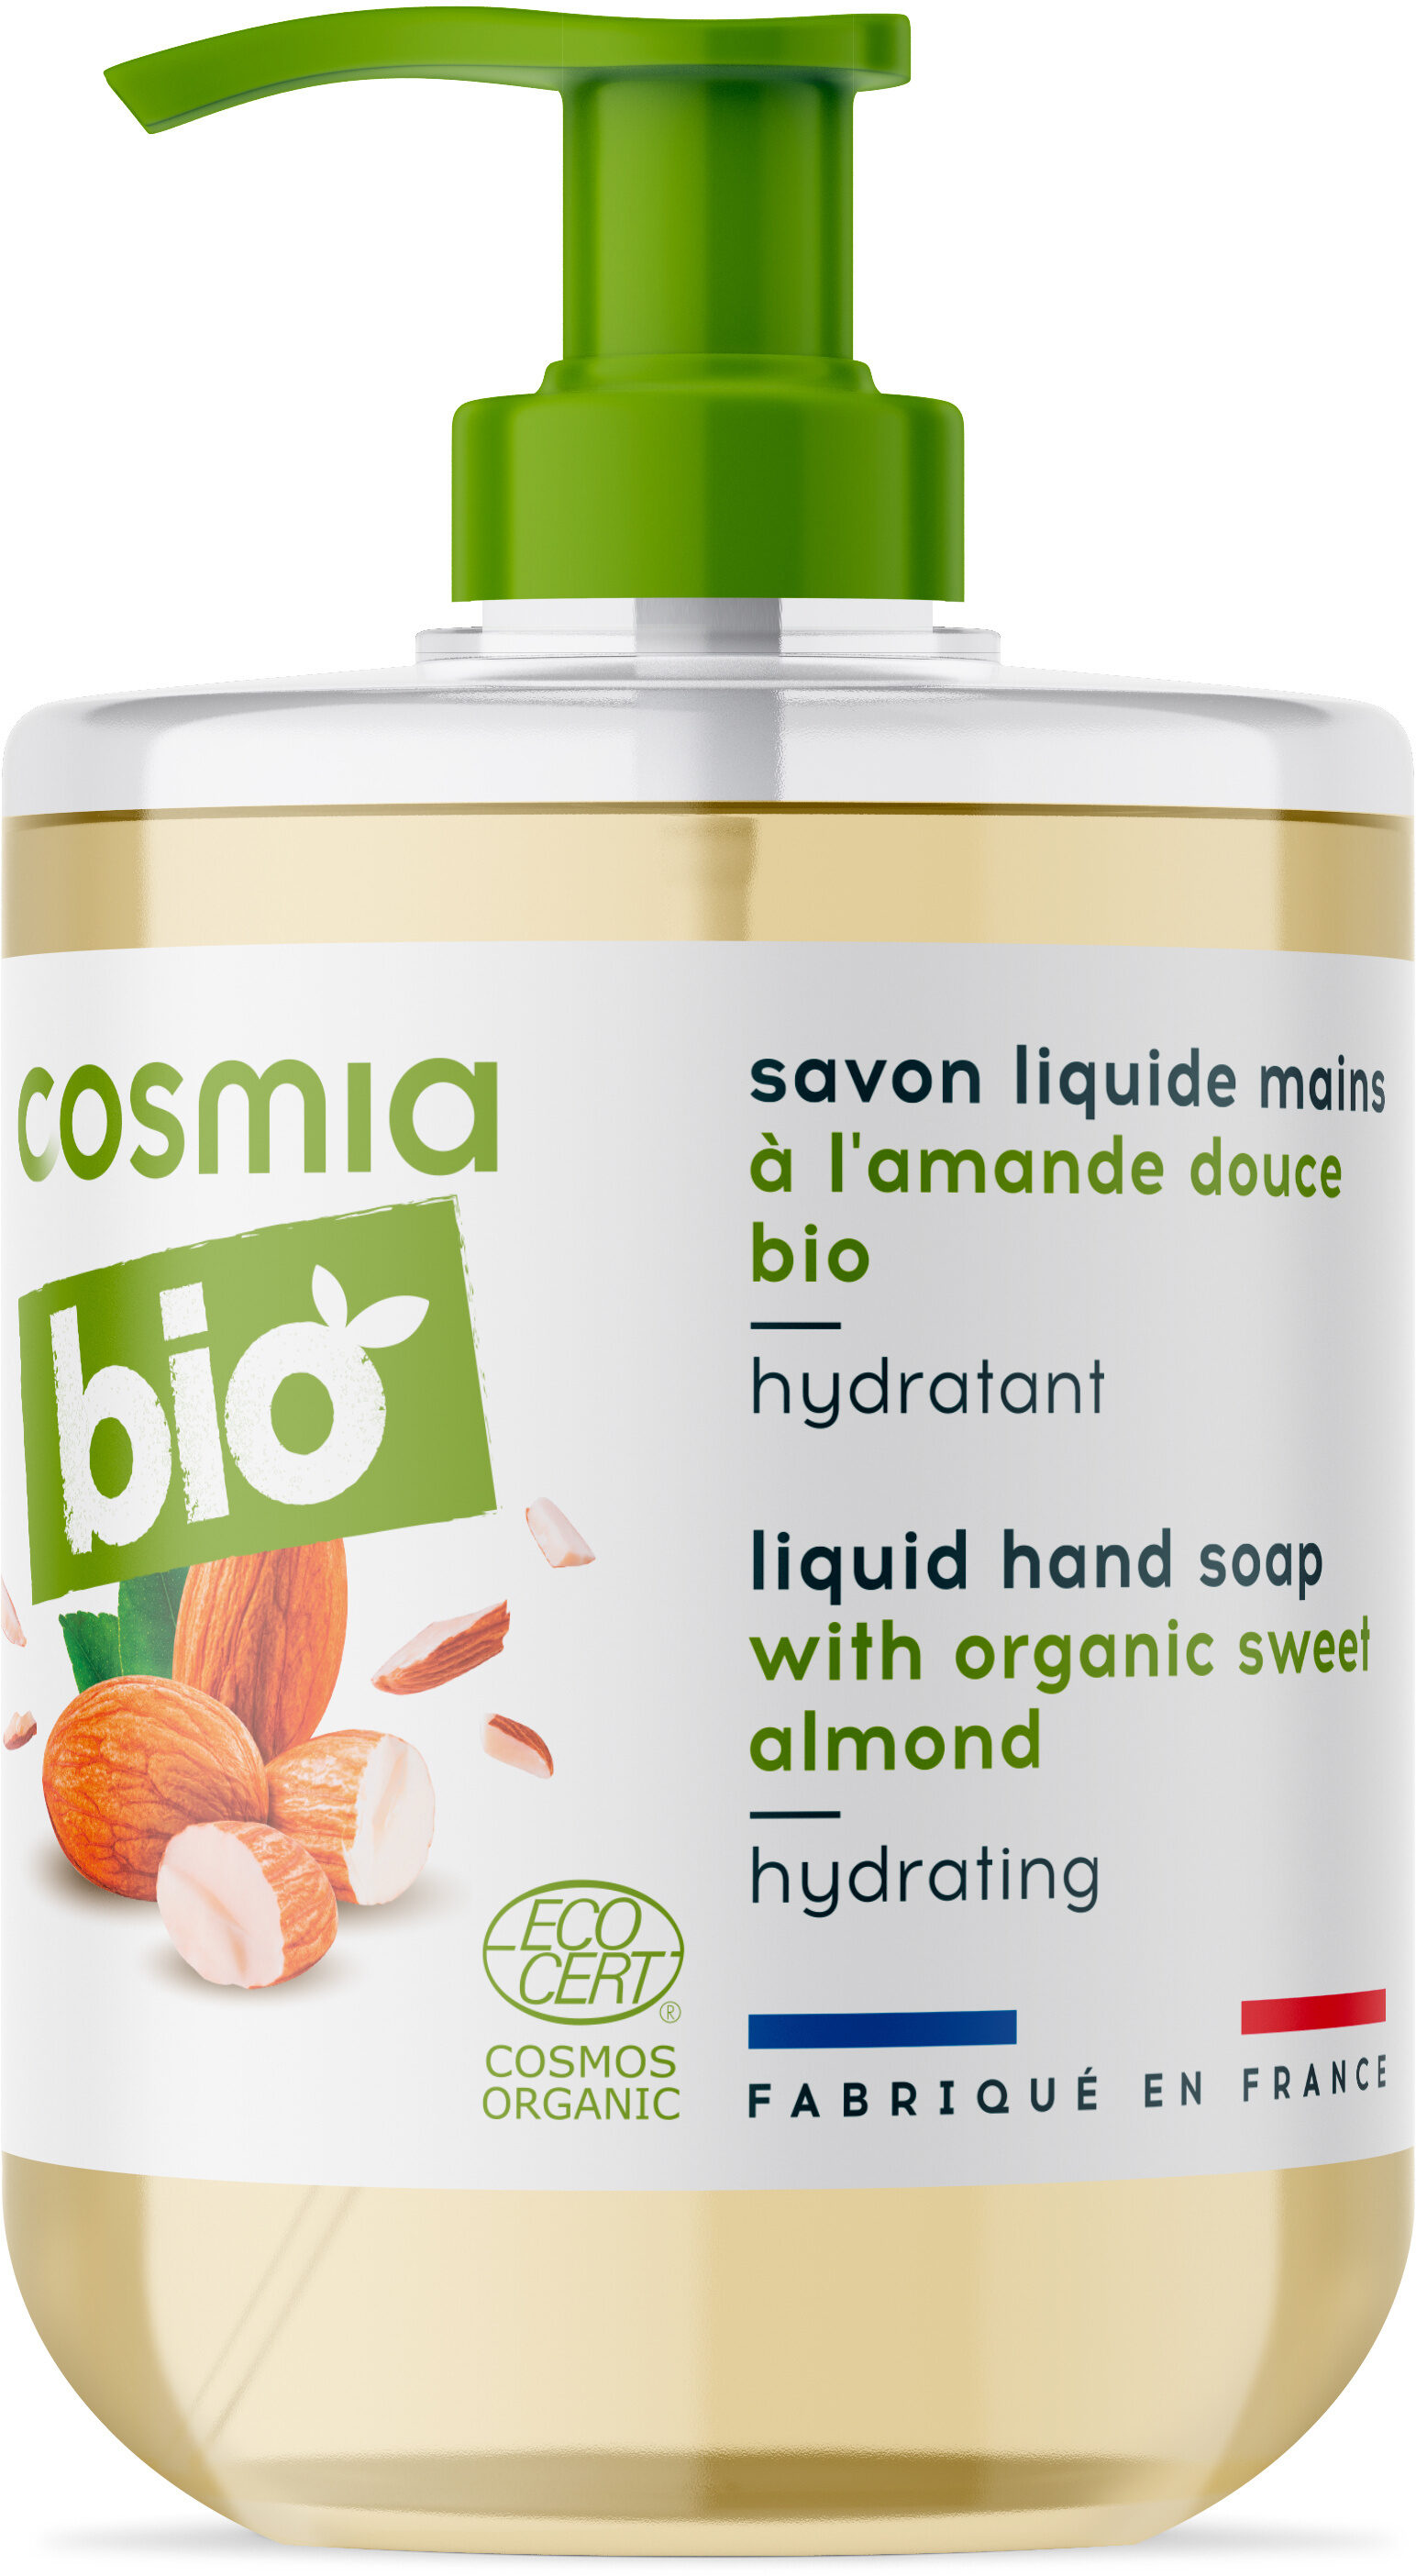 Bio savon liquide mains a l'amande douce bio - Produktas - fr